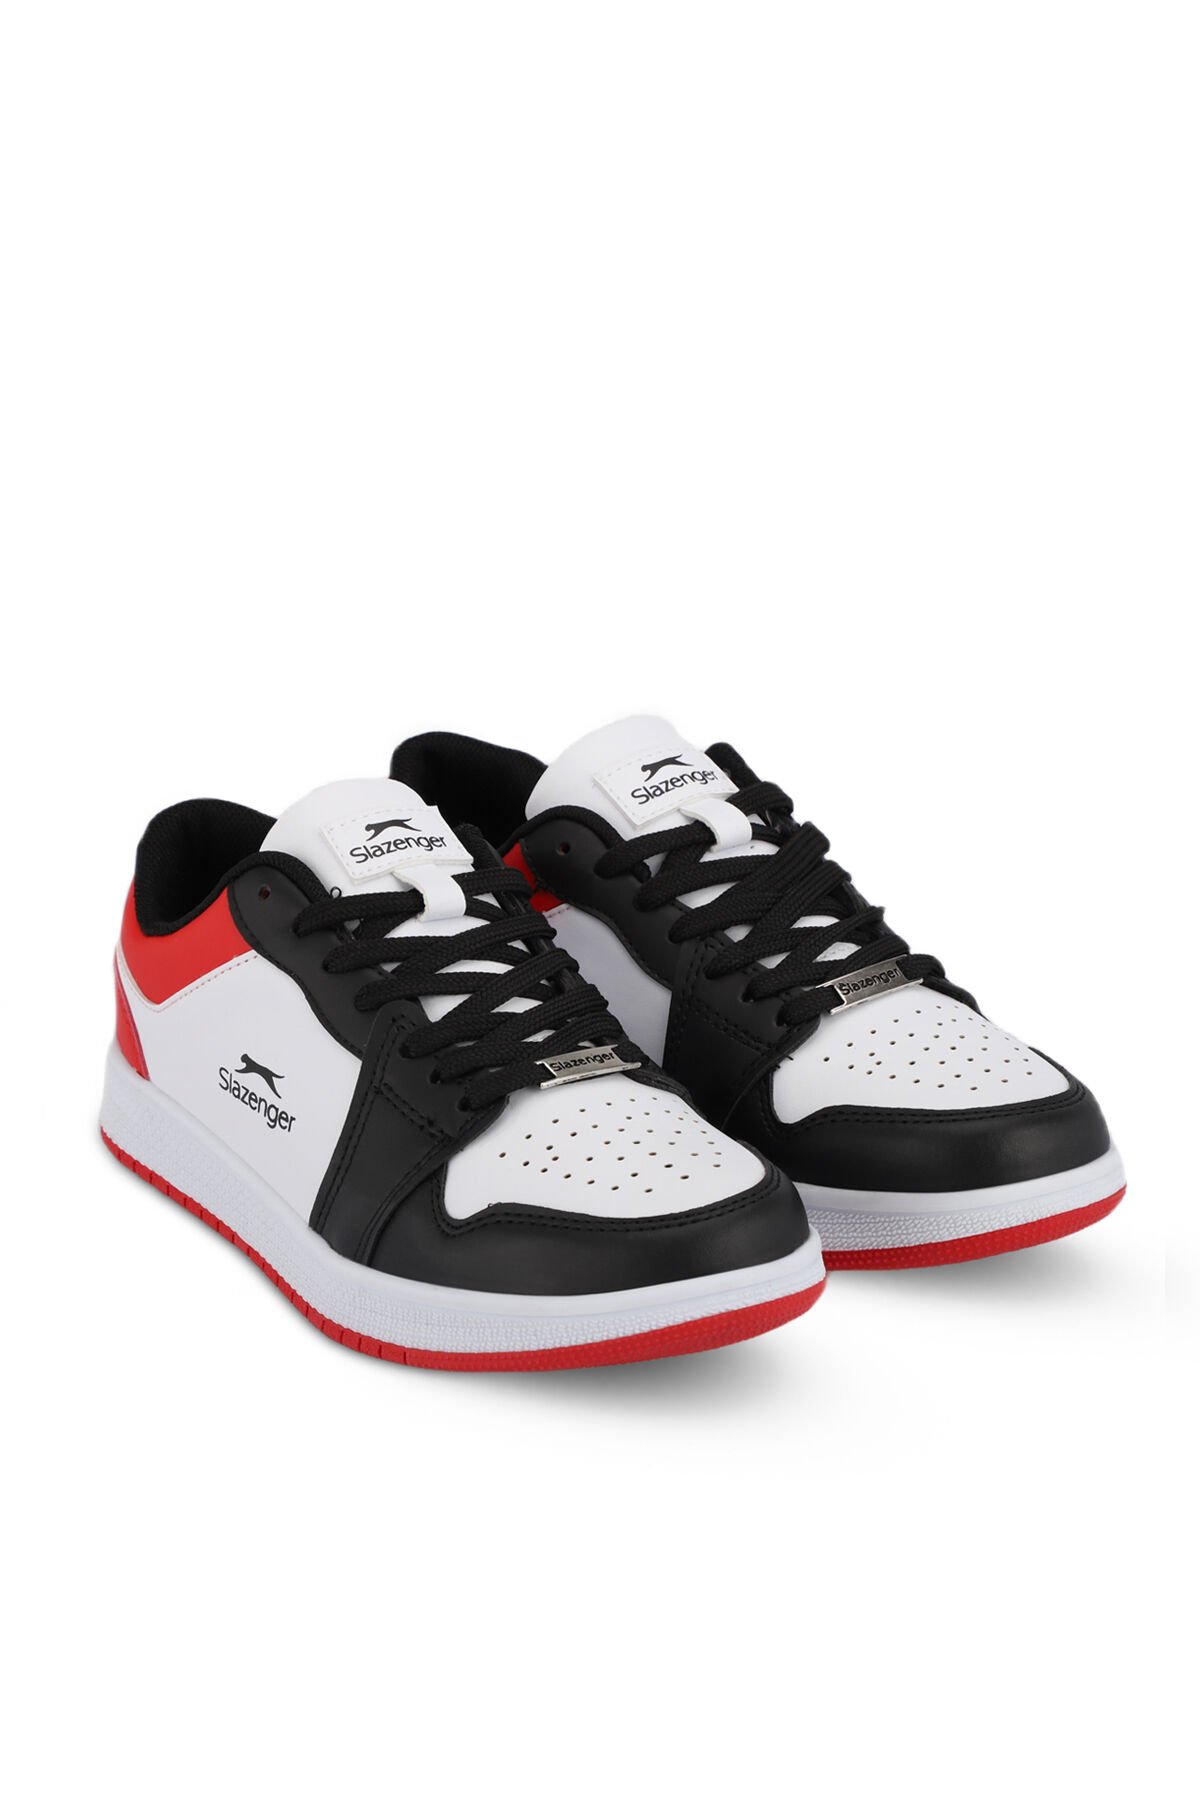 PRINCE I Sneaker Kadın Ayakkabı Beyaz / Siyah / Kırmızı - Thumbnail